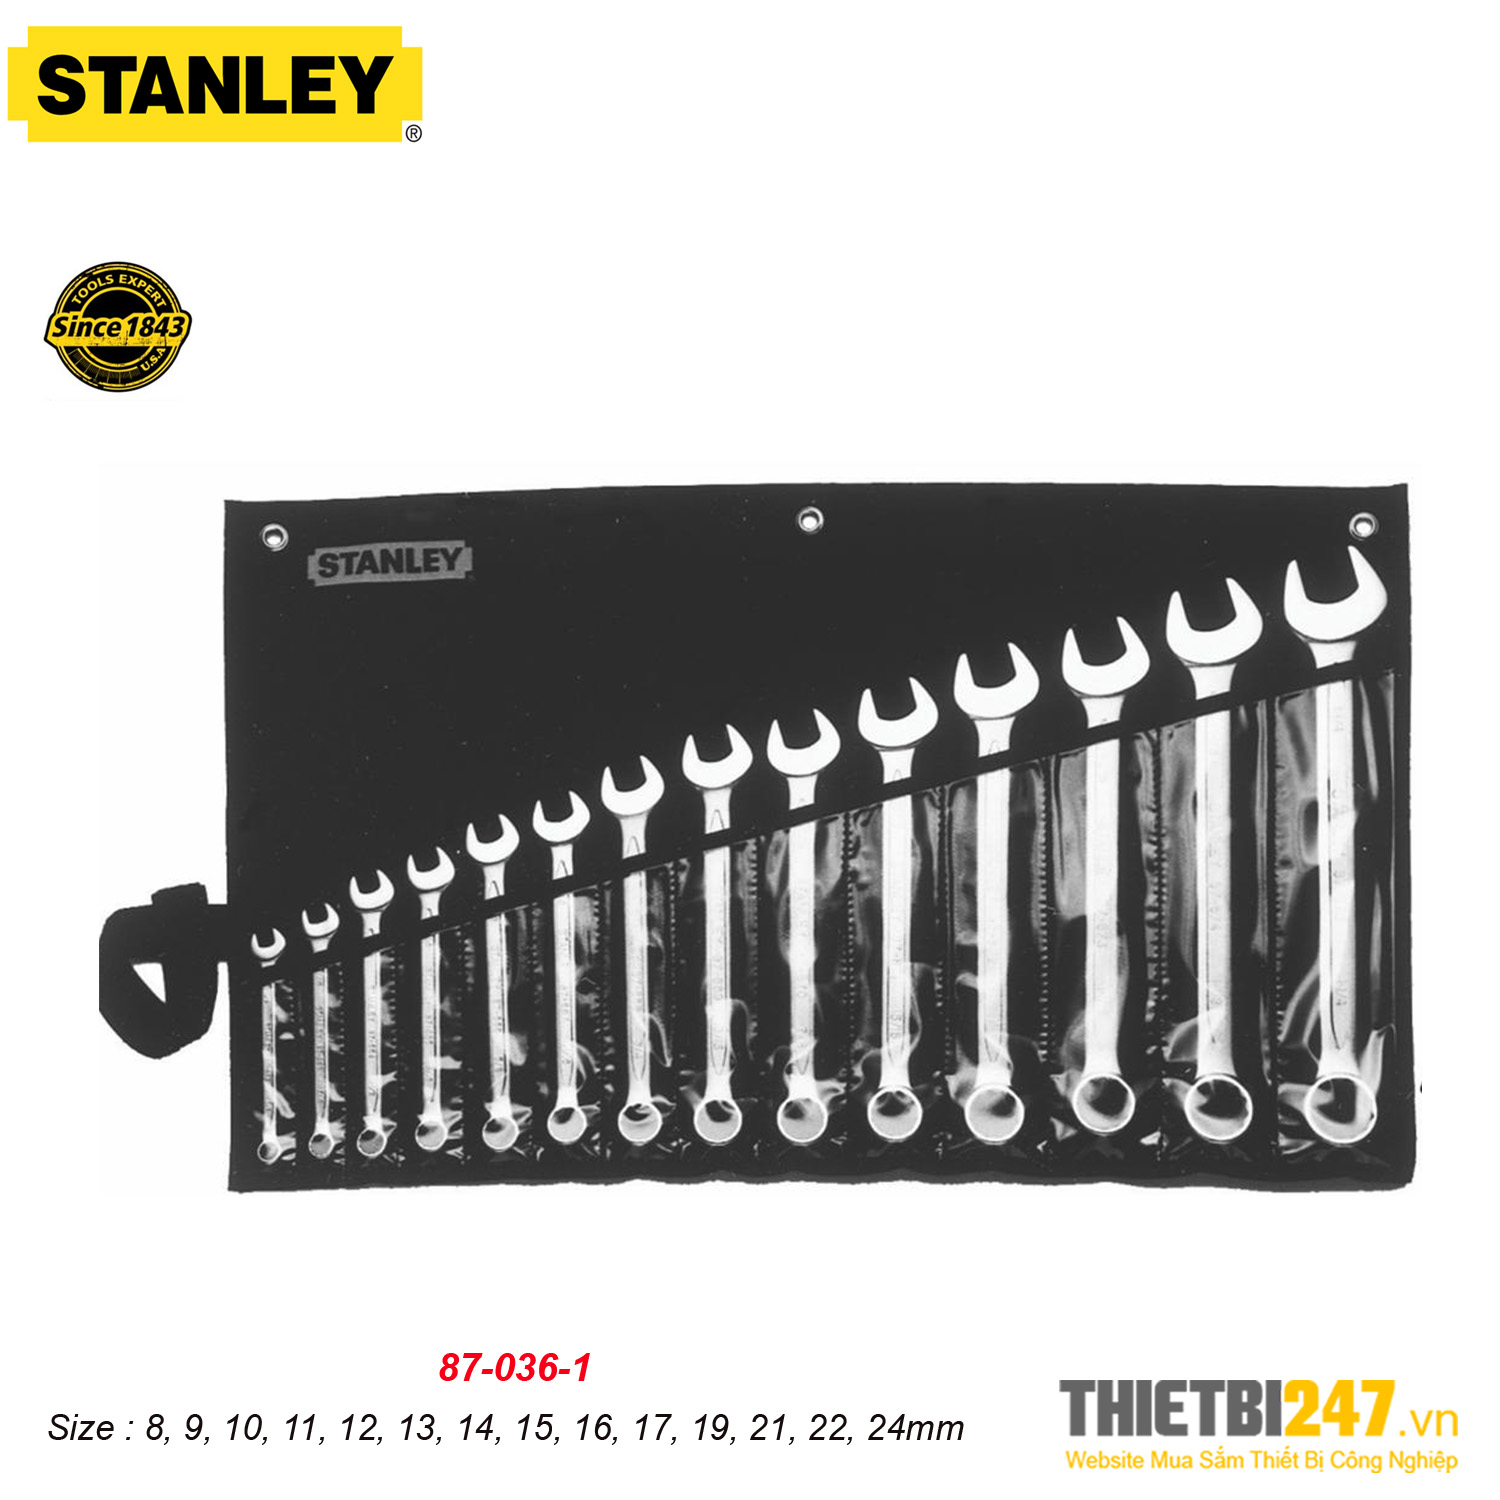 Bộ cờ lê vòng miệng Stanley 87-036-1 8~24mm 14 cái